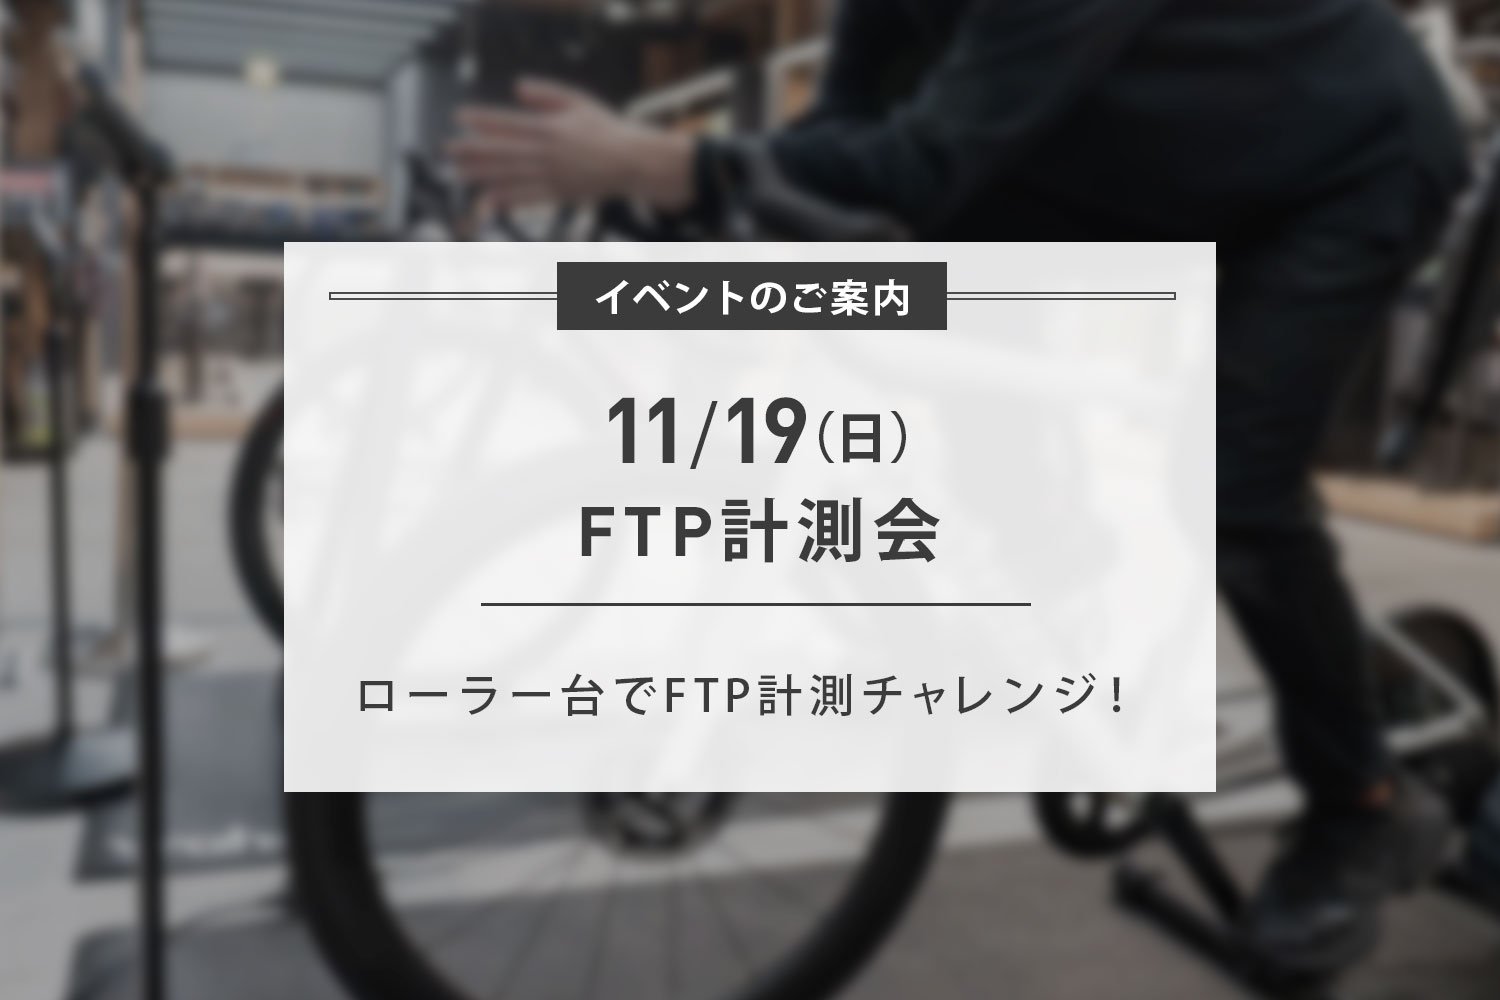 11/19(日) 第一回FTP計測会 開催のお知らせ